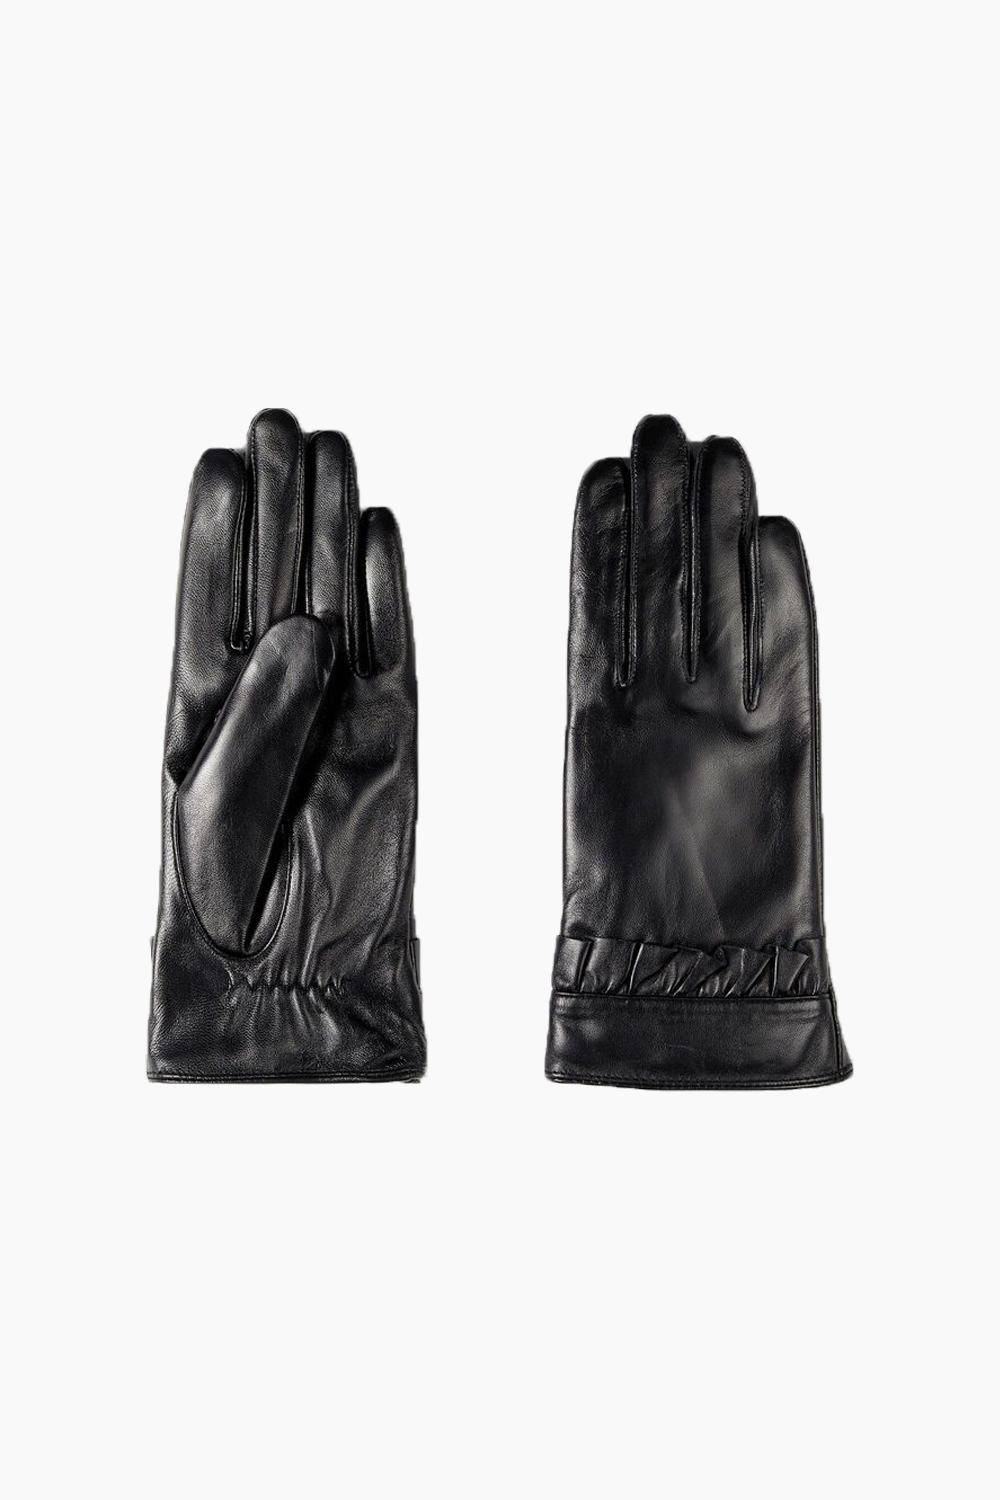 ObjSophie L Gloves 116 - Black - Object